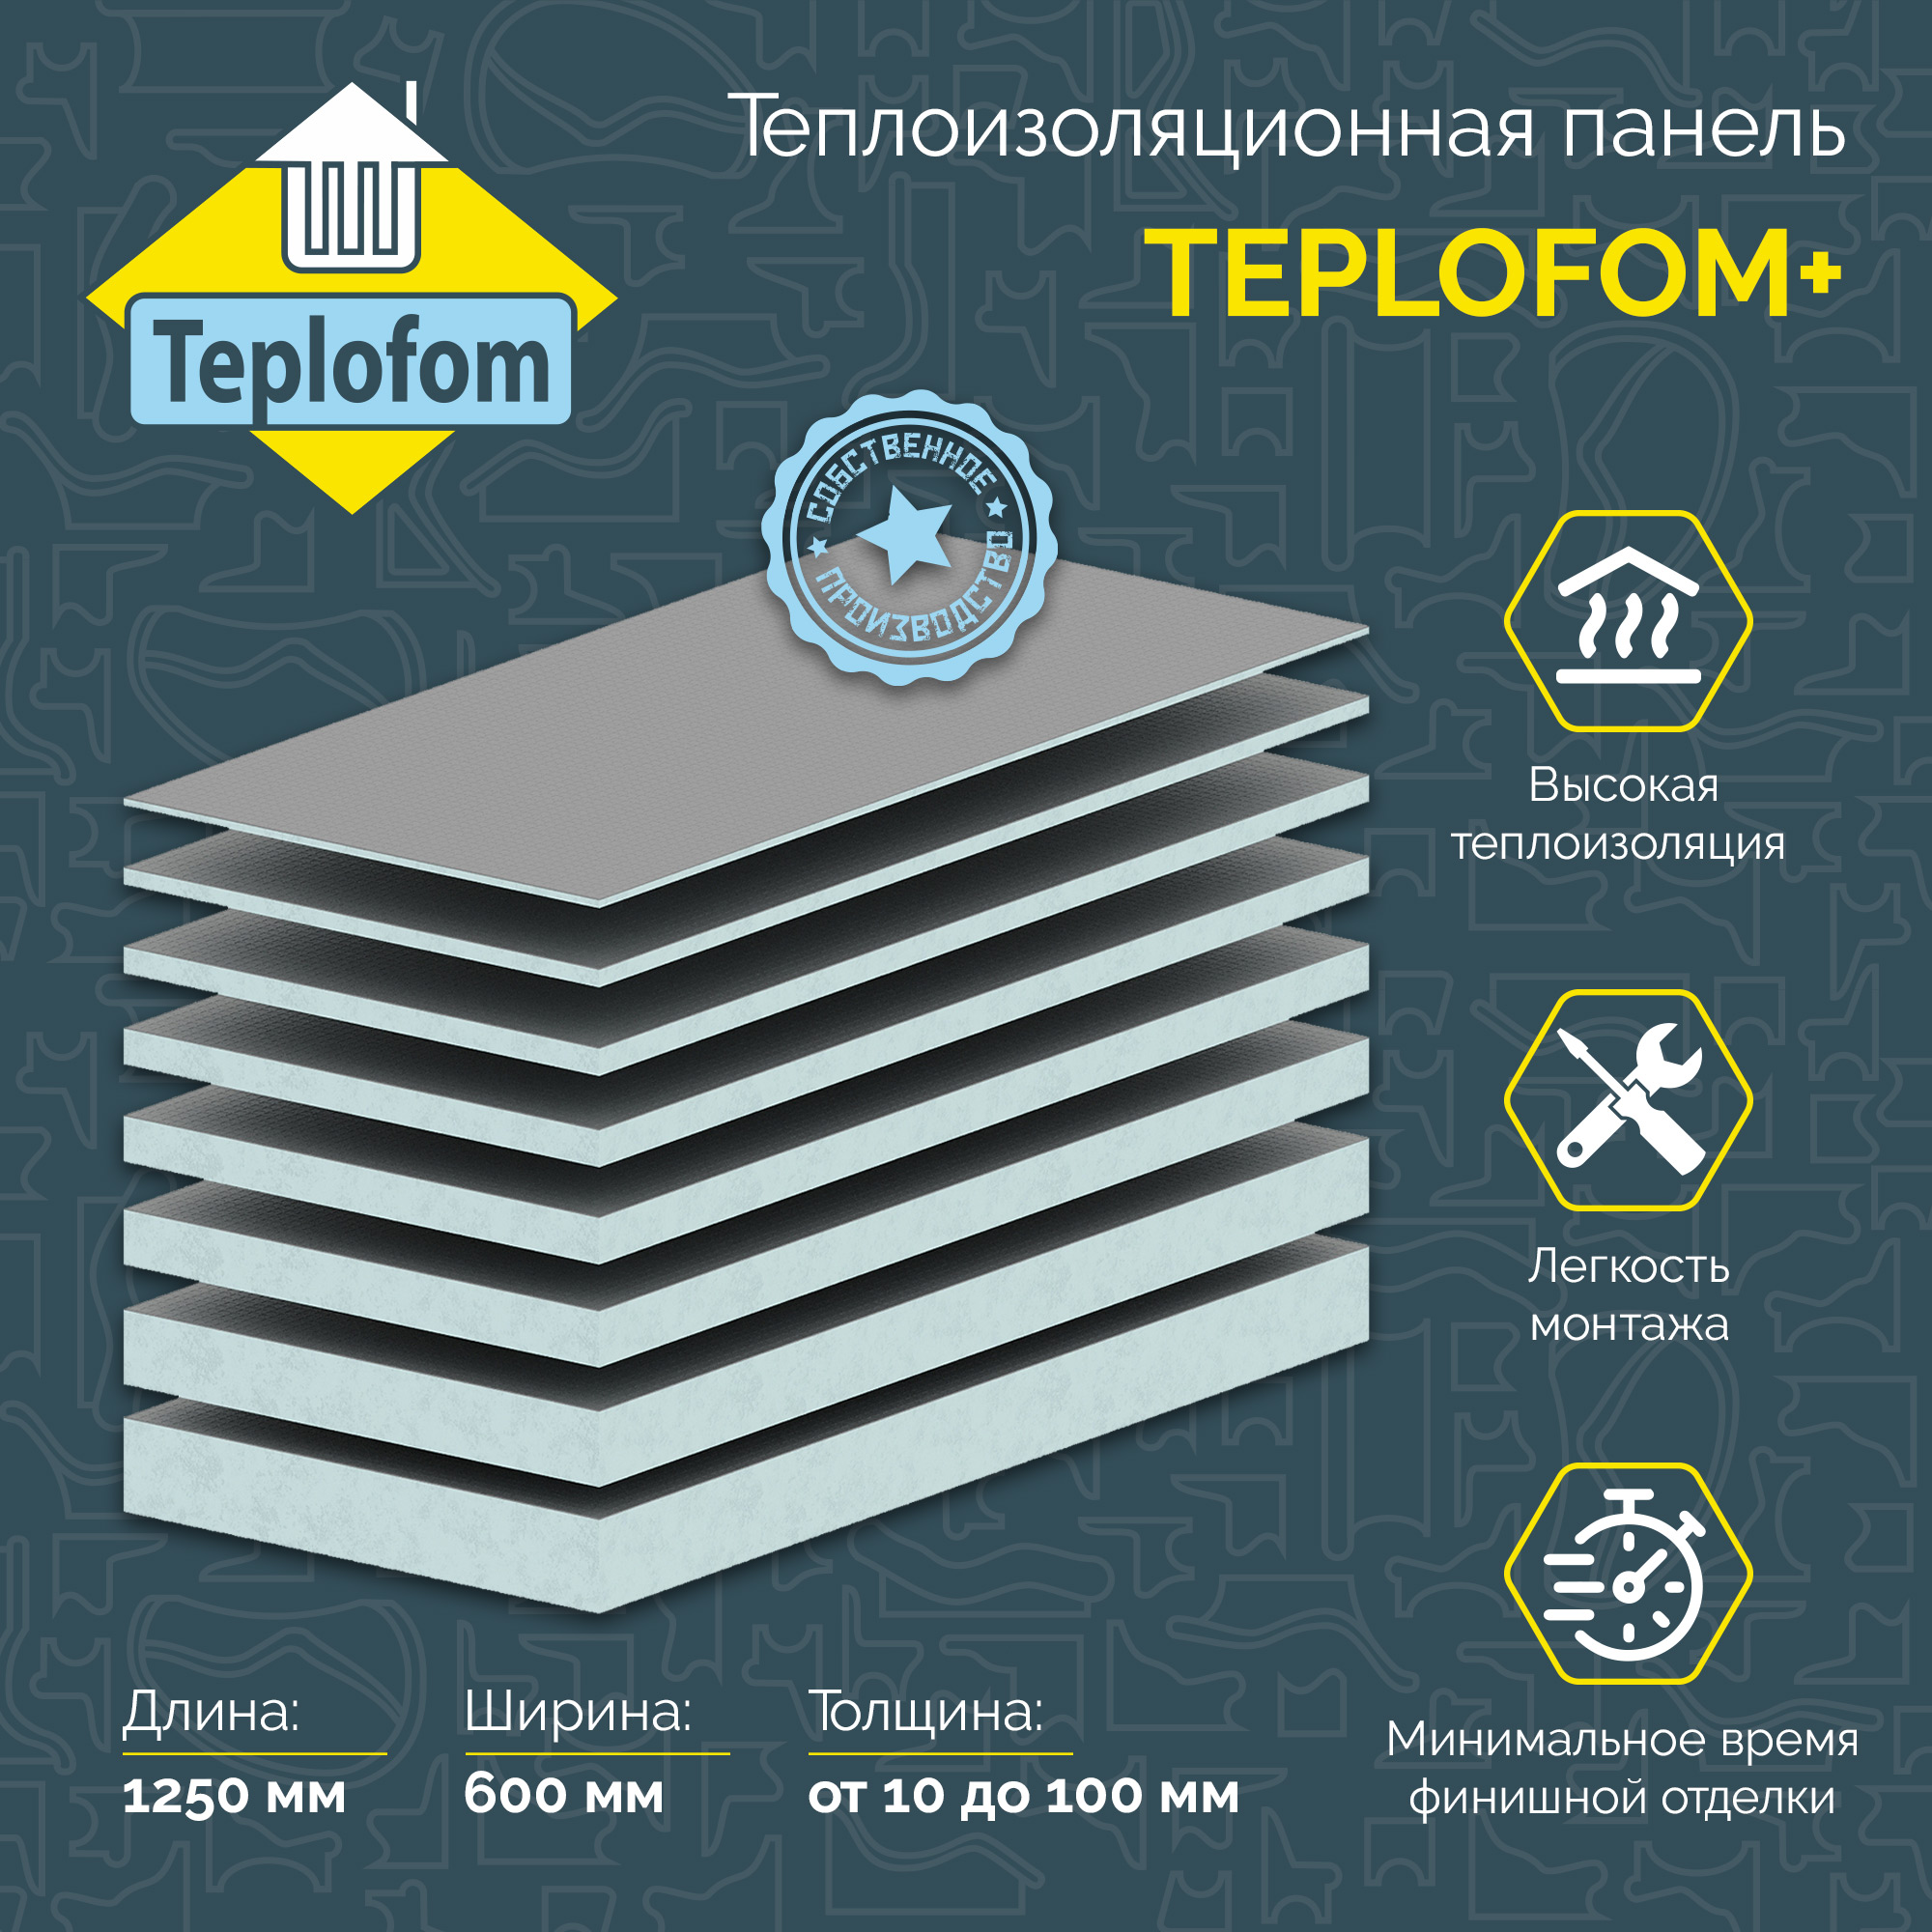 Теплоизоляционная панель TEPLOFOM+100 XPS-02 1250x600x100мм (двухсторонний слой) теплоизоляционная панель ruspanel basic с двухсторонним армированием 1250х600х80 мм